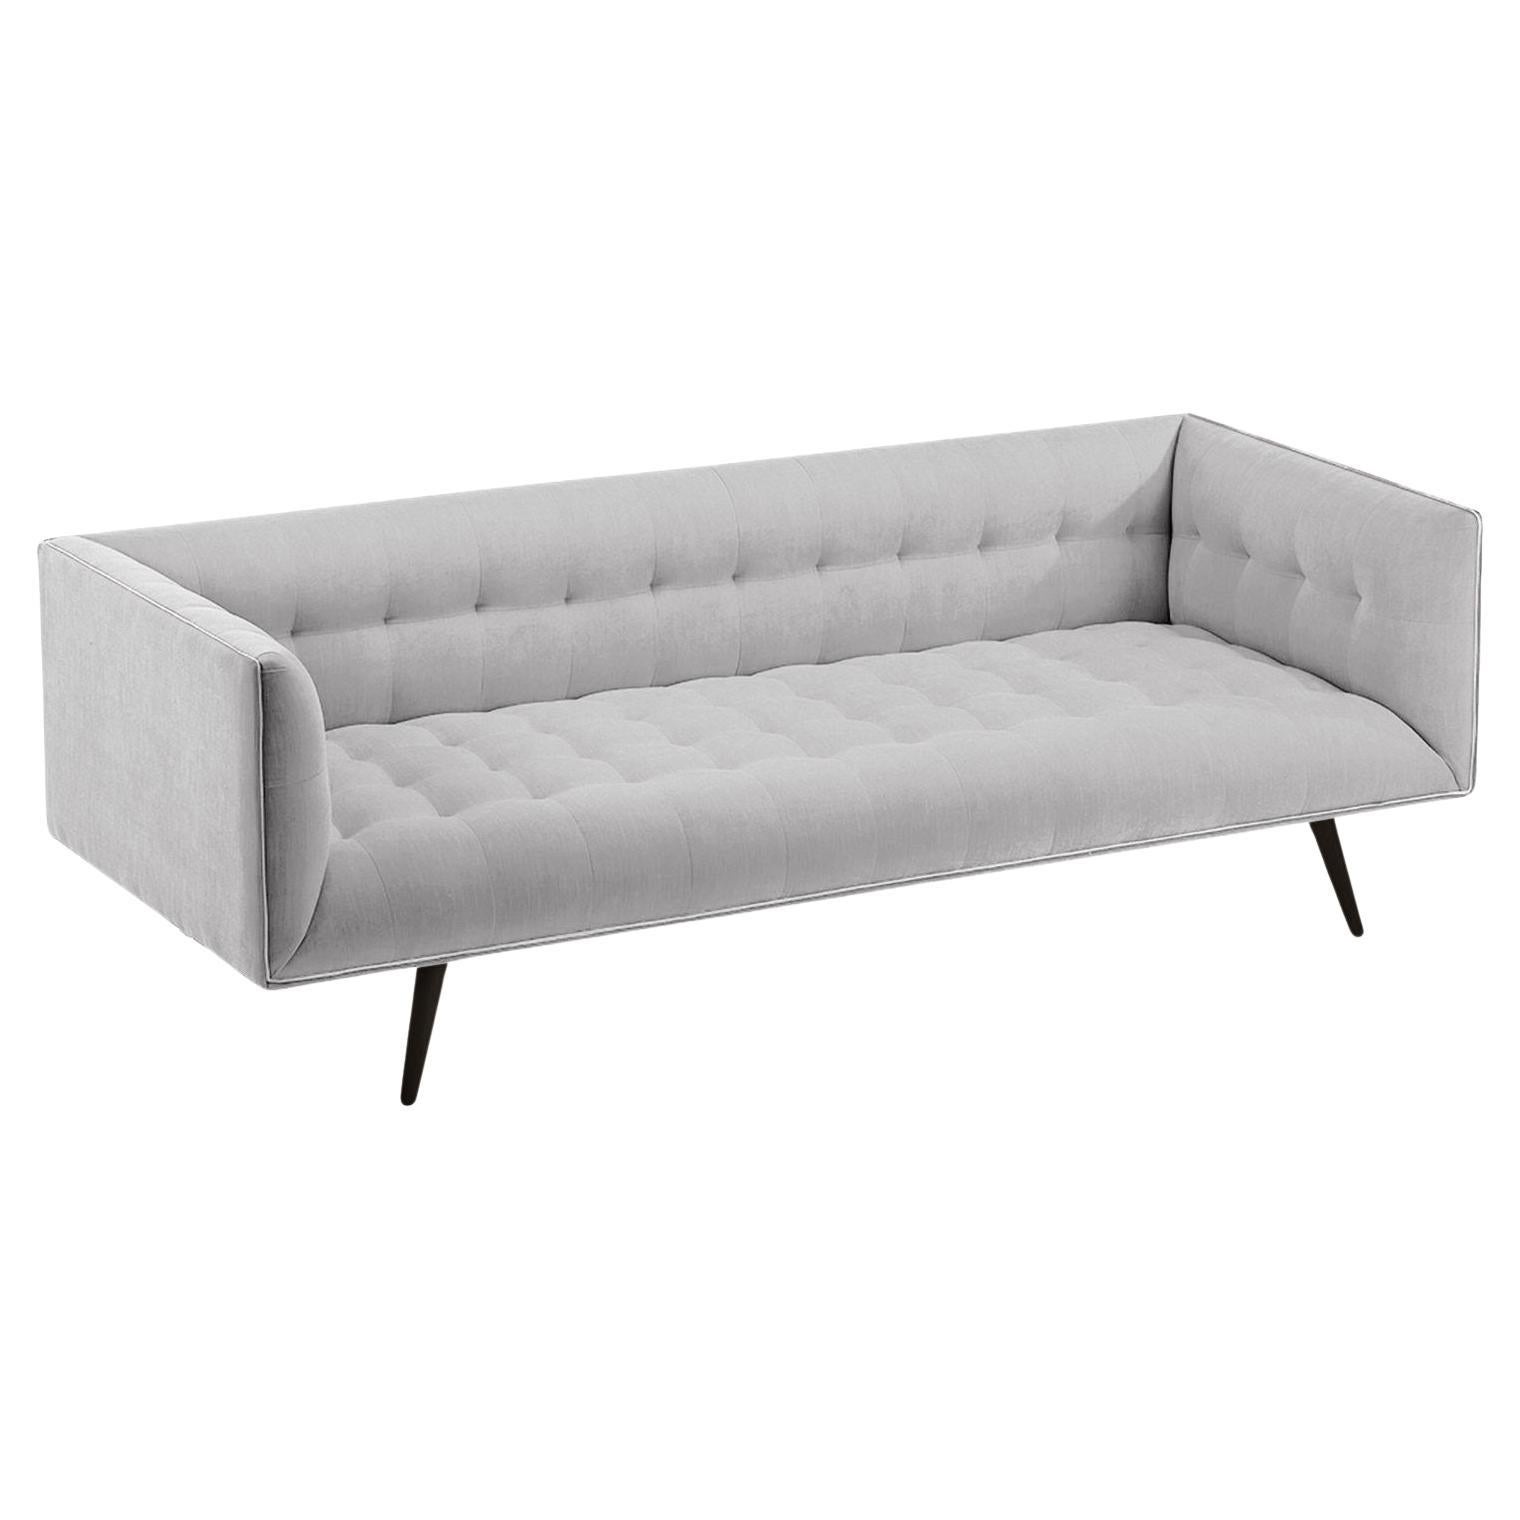 Das Dust-Sofa ist aus Massivholz gefertigt und verfügt über ein elegantes, getuftetes Aussehen und eine bequeme Sitzfläche. Handgefertigt mit einem Sockel aus Massivholz und Holzbeinen mit einem stilvollen Metallfuß aus poliertem Messing. Als Option